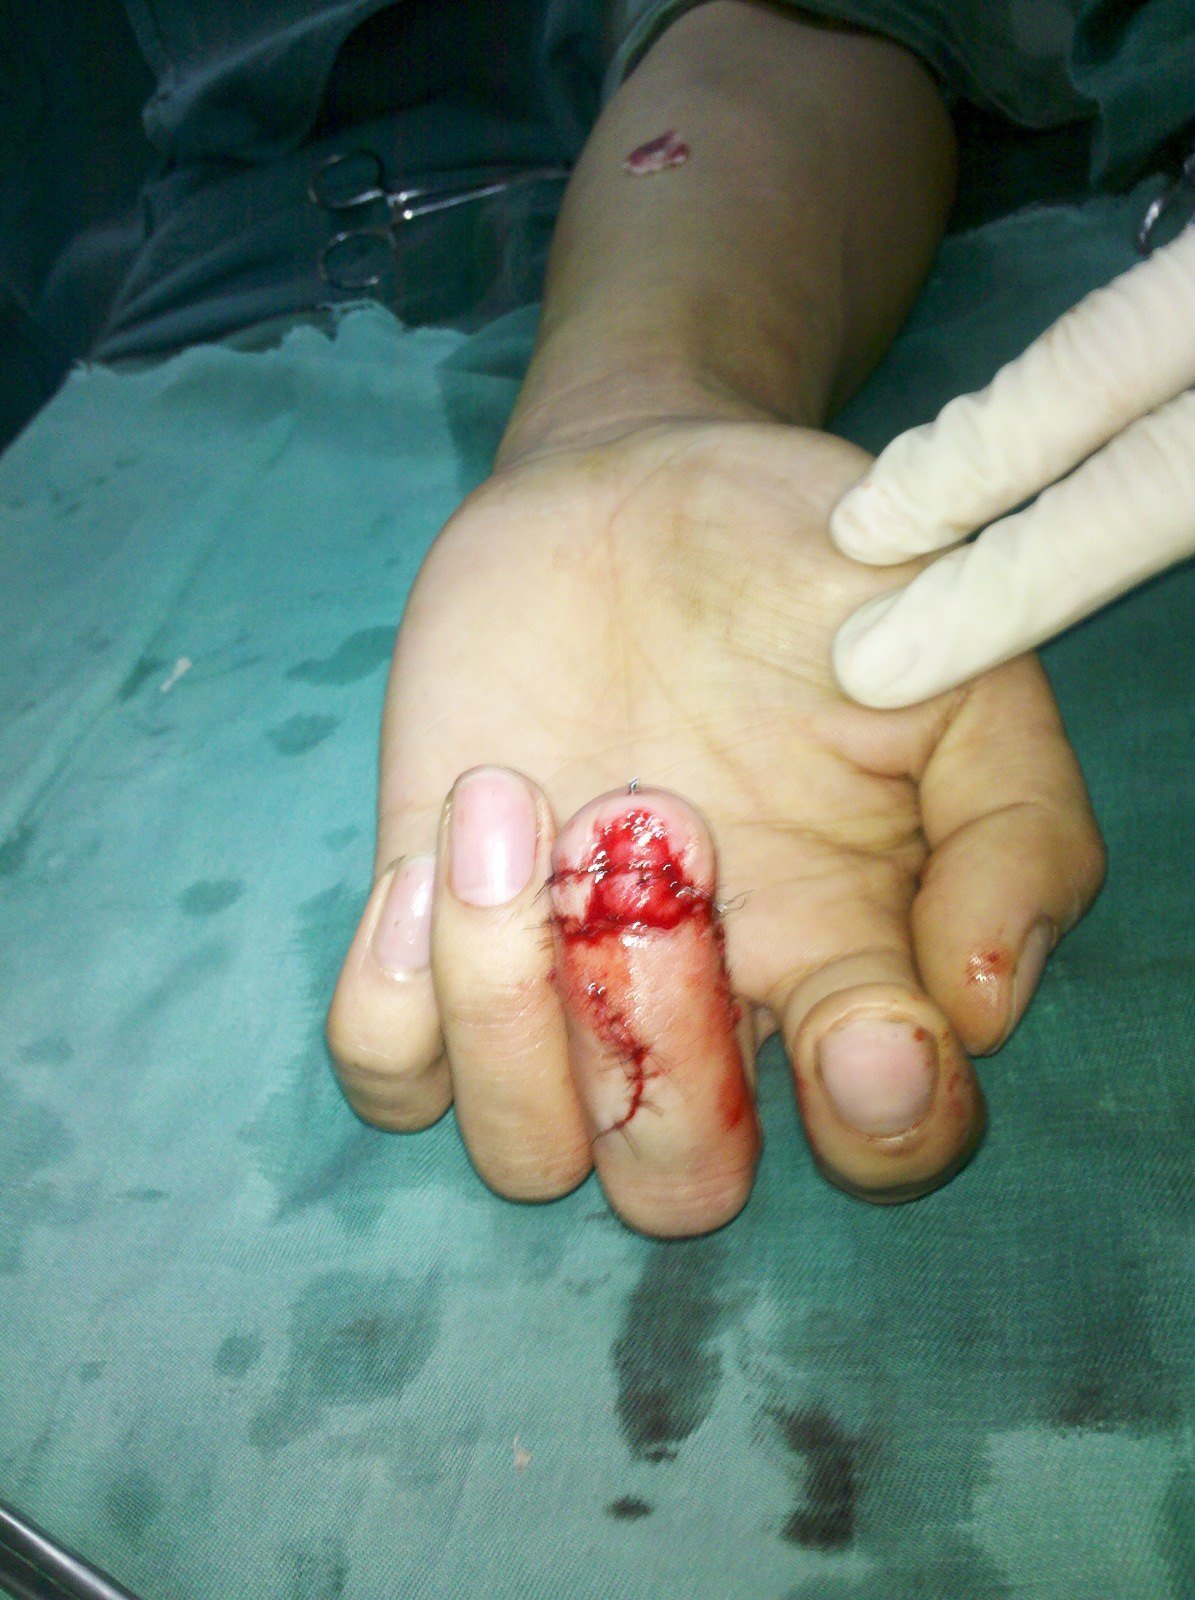 人工指甲盖植入手术图片